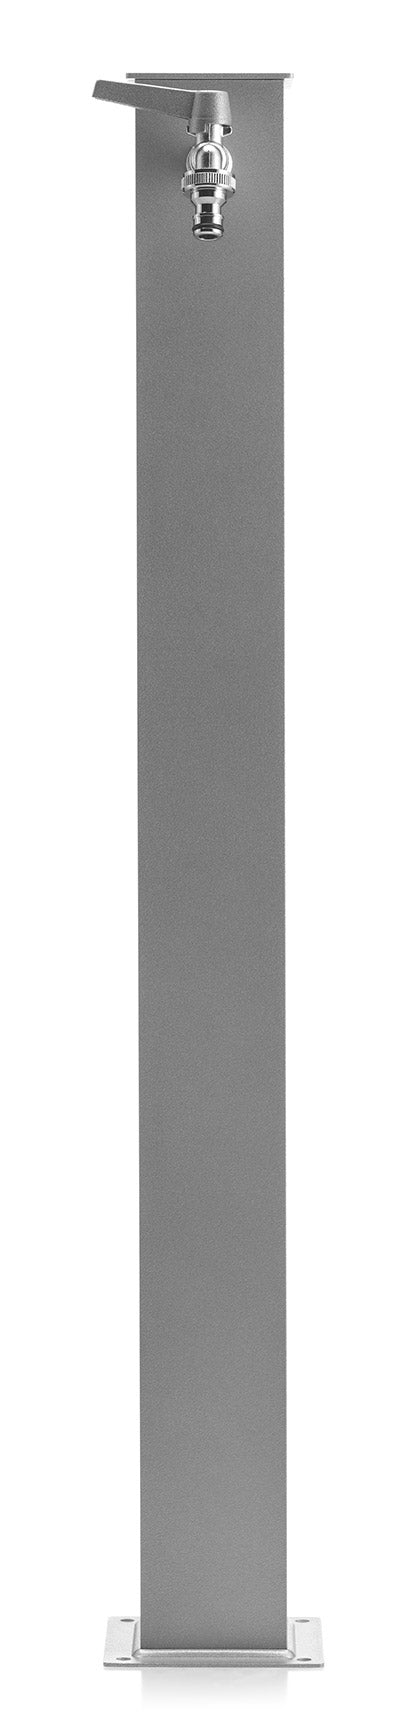 Fontana da Giardino con Rubinetto Belfer 42/Q Alluminio prezzo